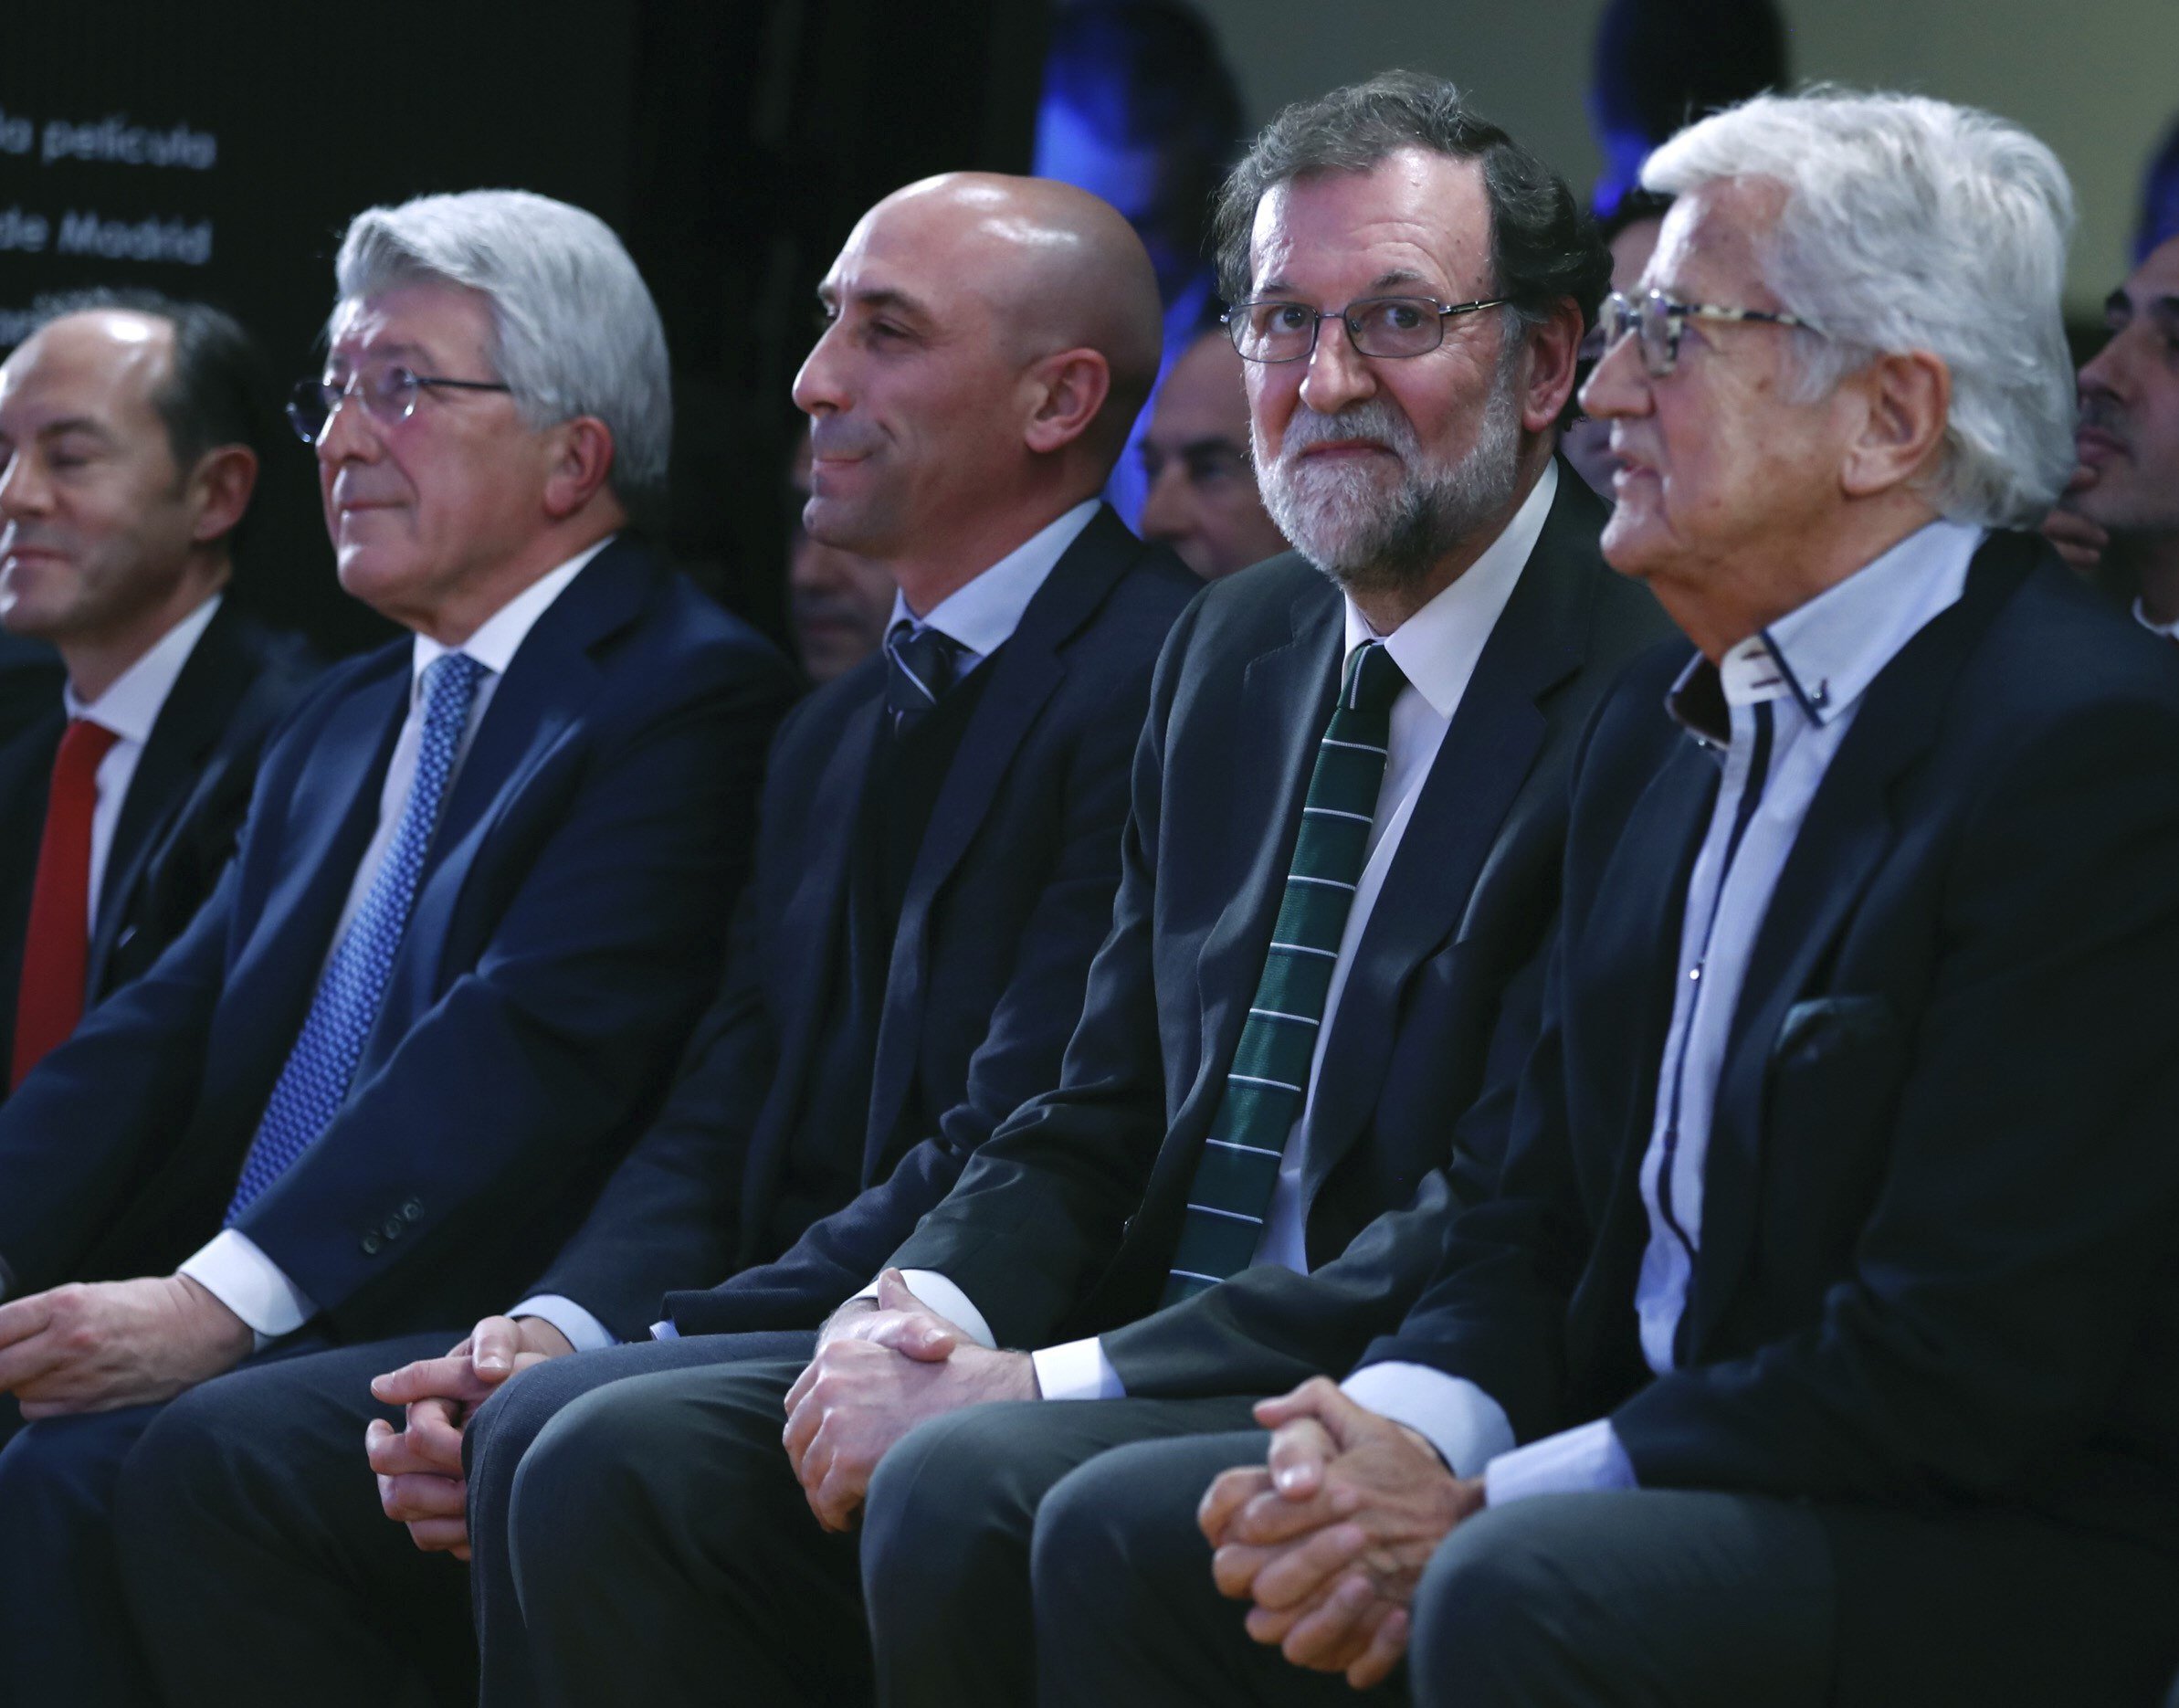 Rajoy, liberado hablando de su Madrid, reconoce que en el deporte "no molesto a nadie"